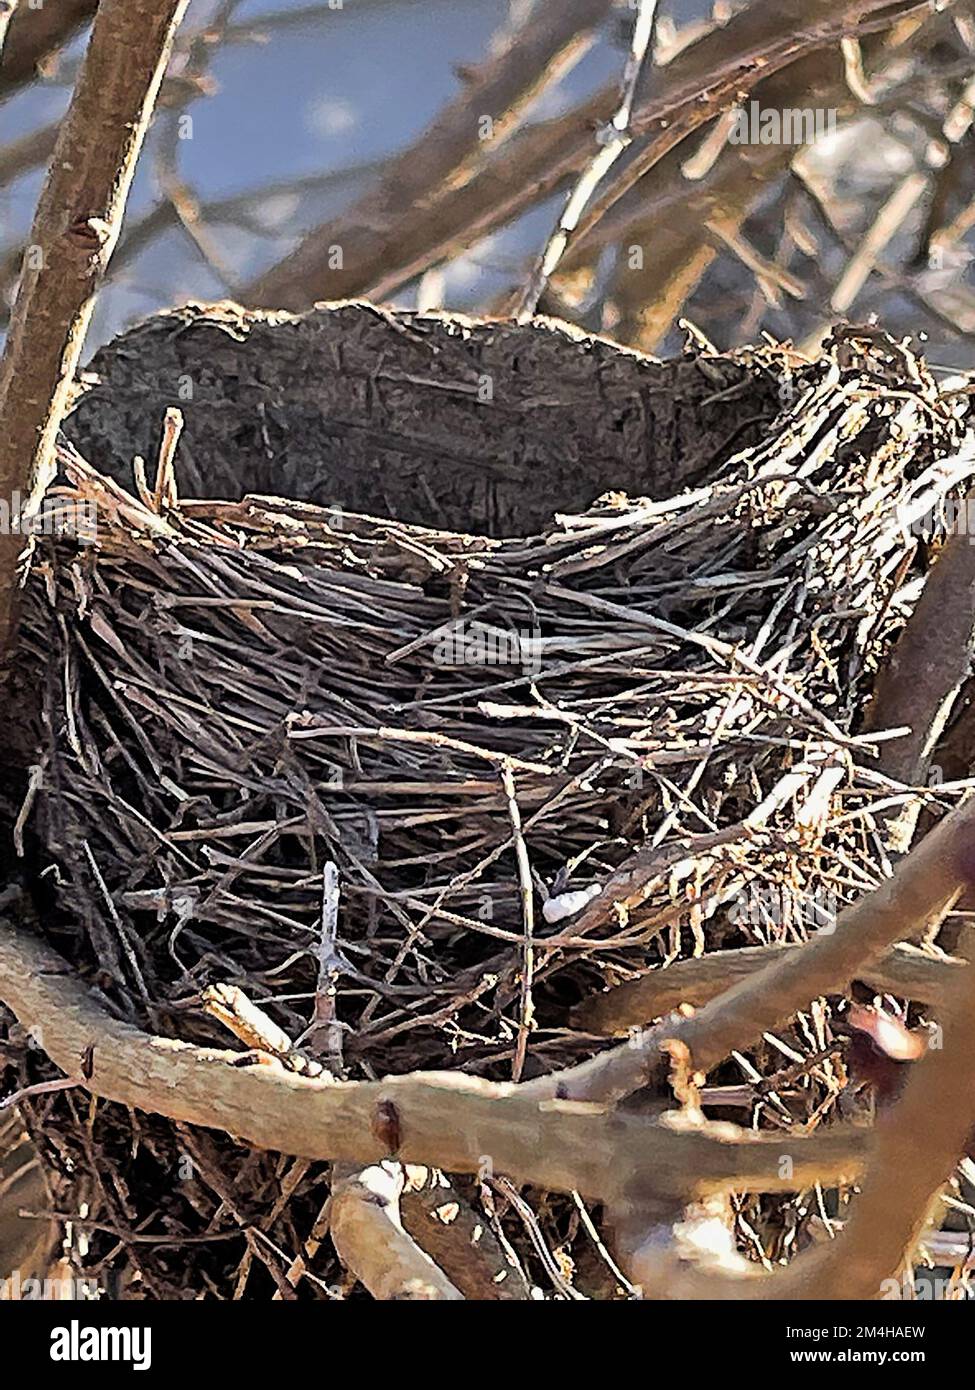 Nid d'oiseau vide emmêlé entre les branches dans le Bush pendant la saison d'hiver Banque D'Images